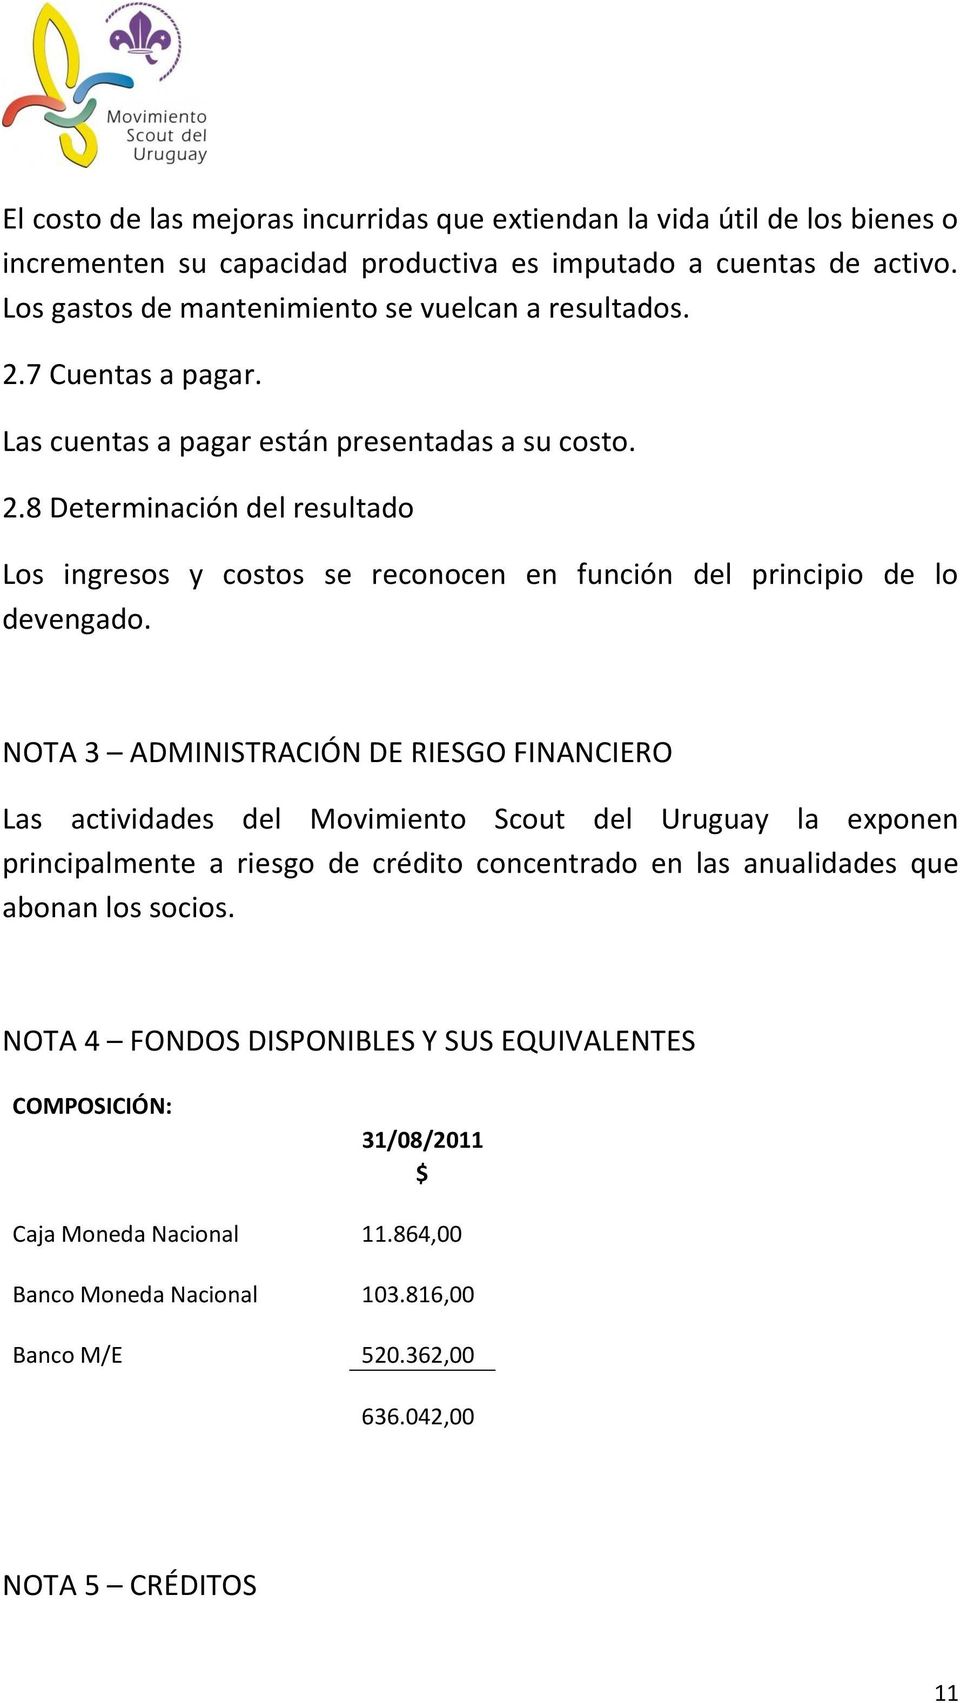 NOTA 3 ADMINISTRACIÓN DE RIESGO FINANCIERO Las actividades del Movimiento Scout del Uruguay la exponen principalmente a riesgo de crédito concentrado en las anualidades que abonan los